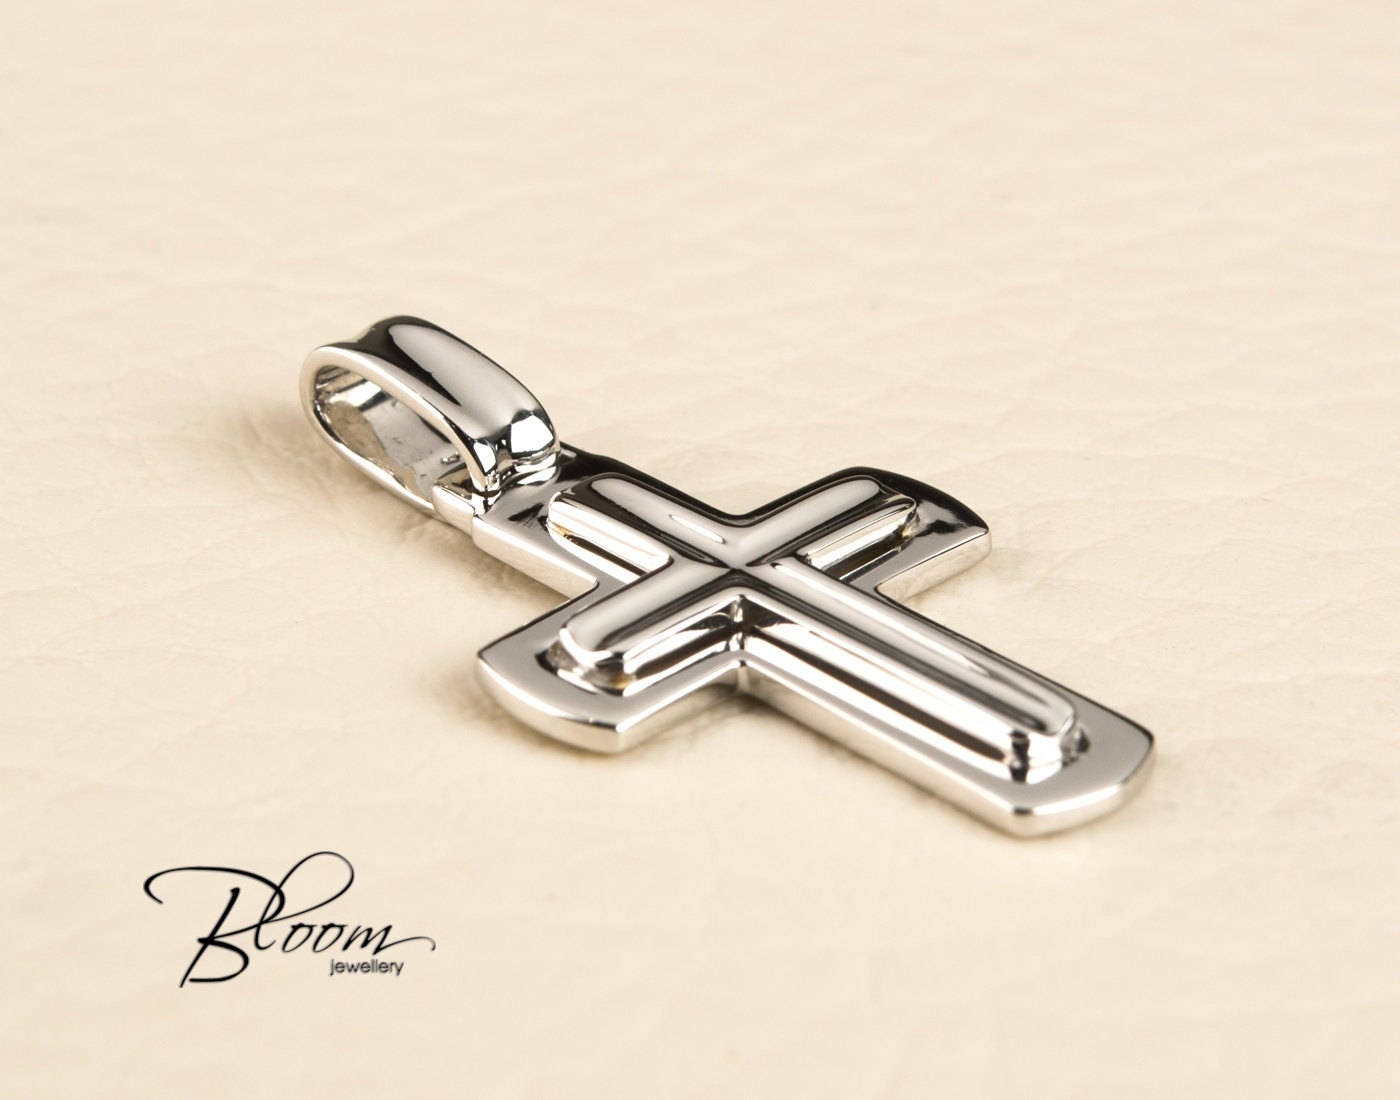 Cross Pendant (Silver) | Men's Necklaces | MANSSION